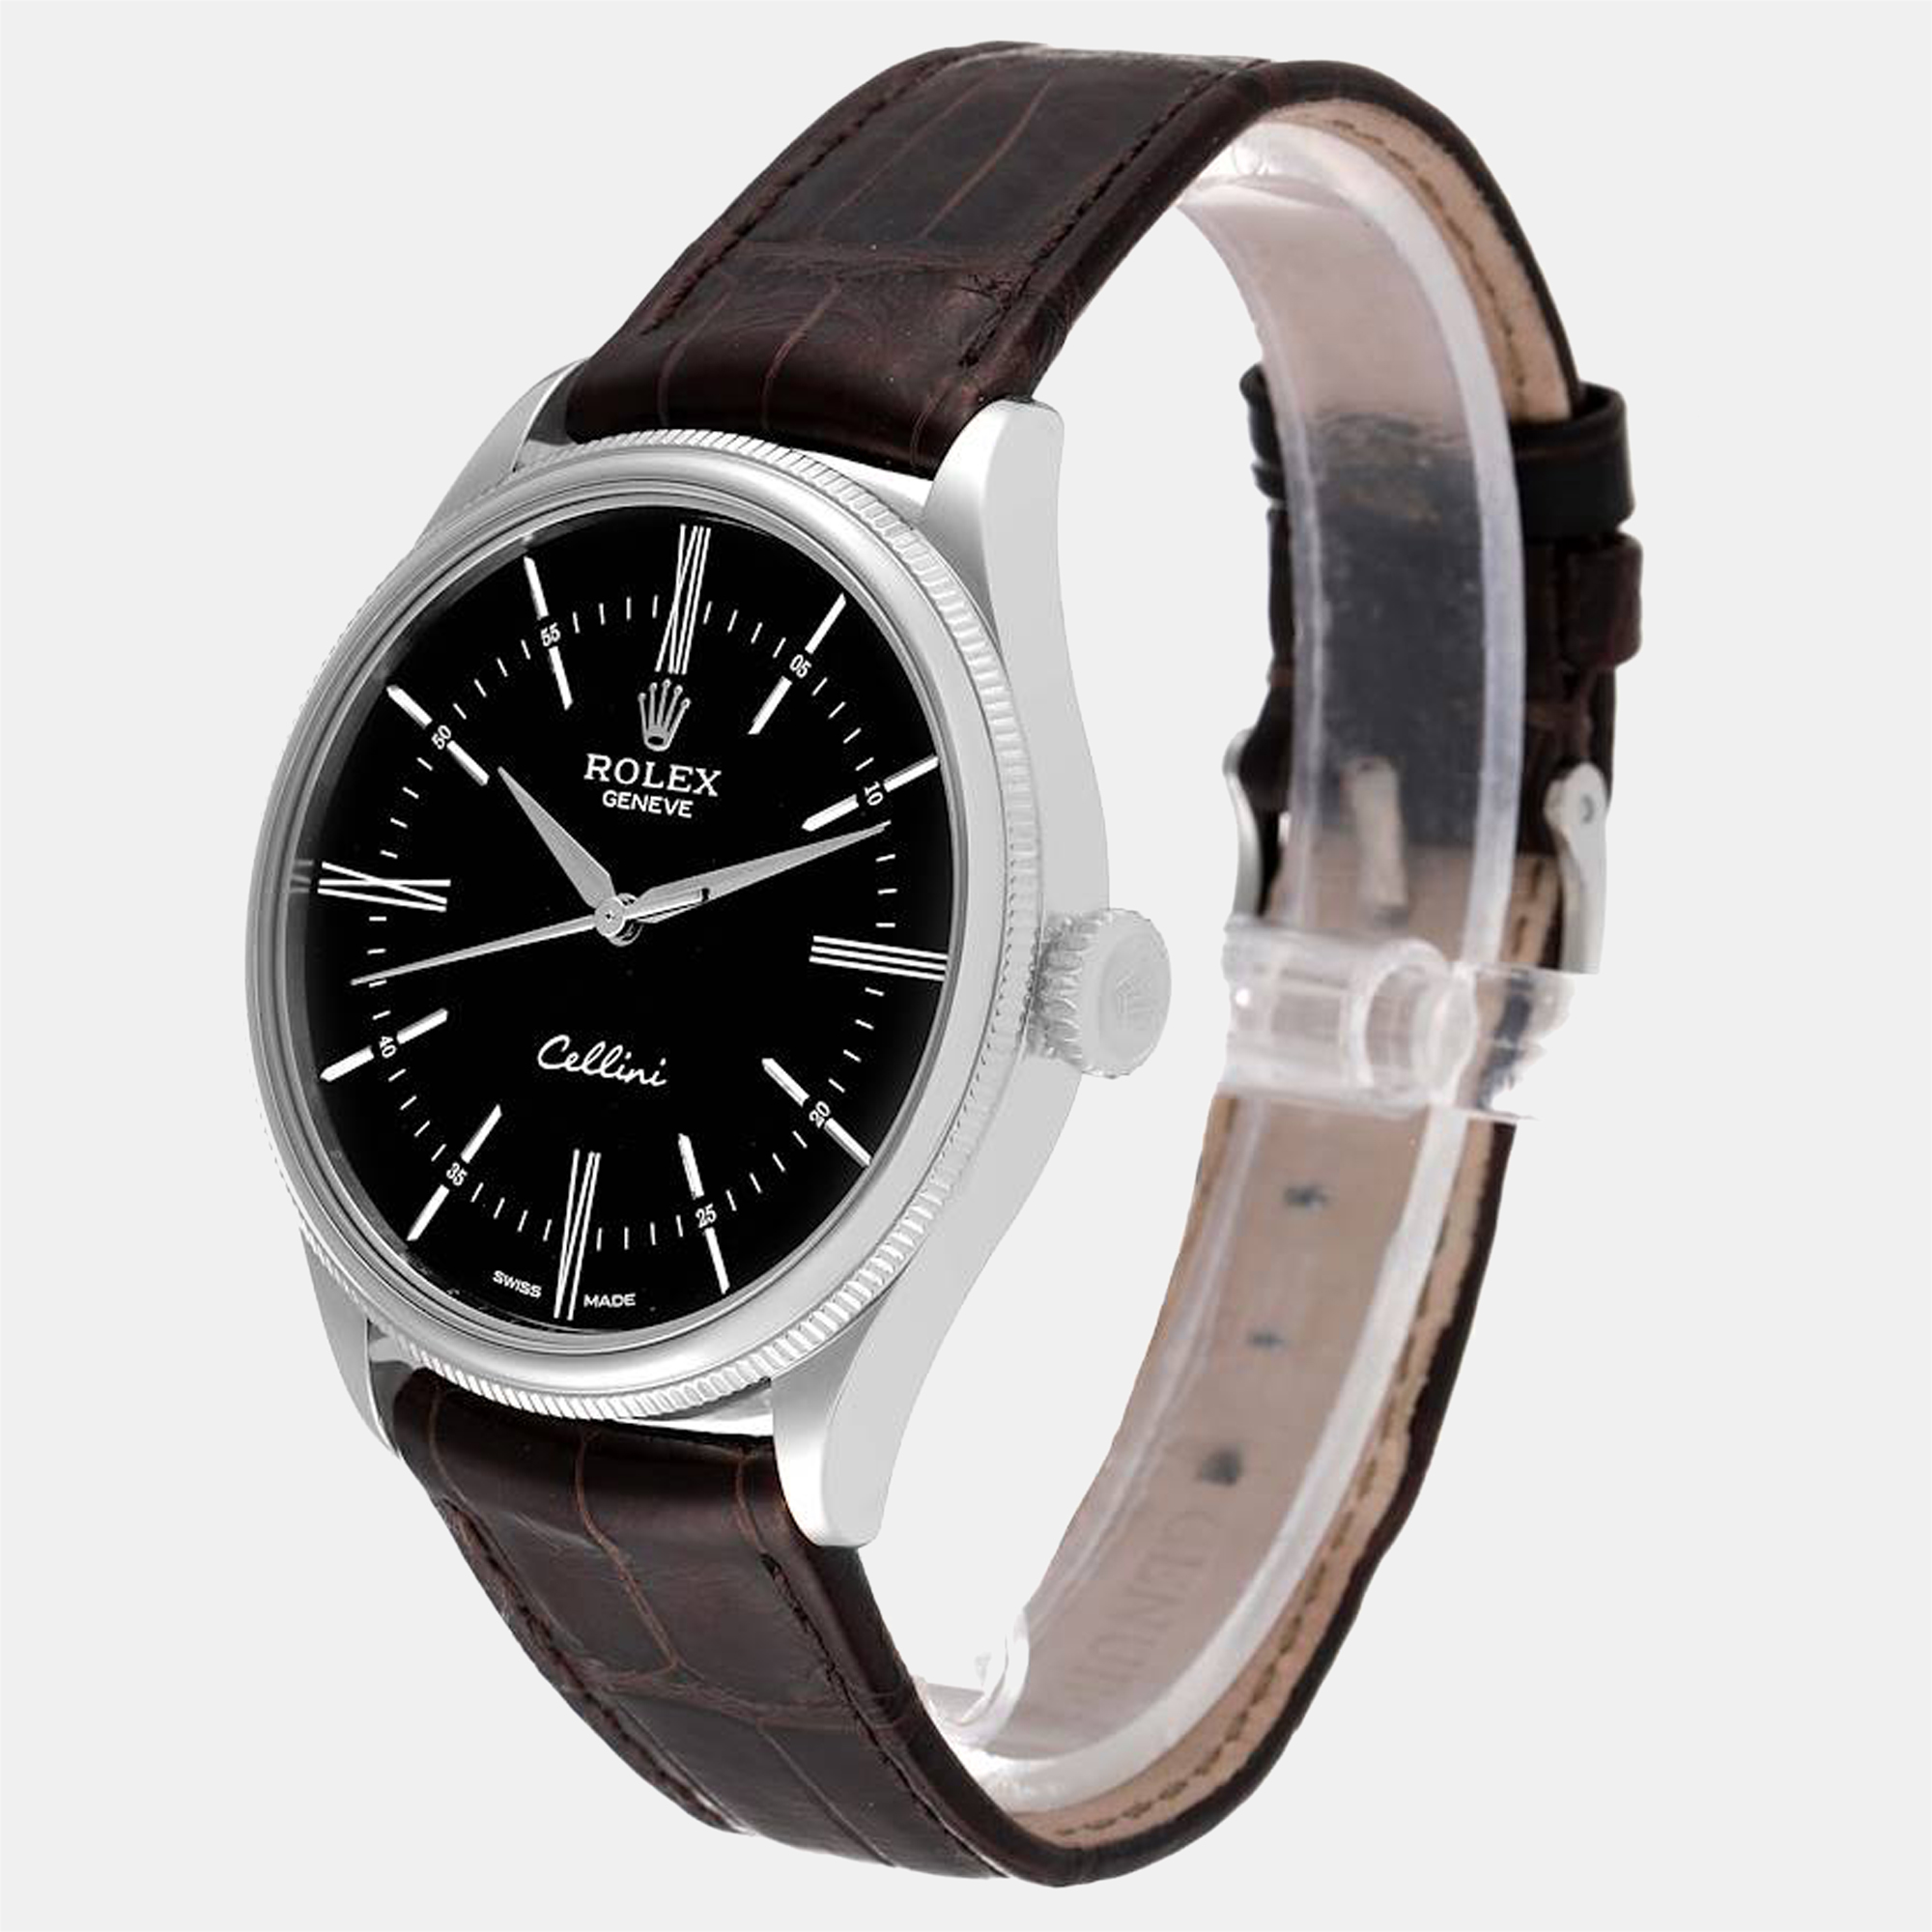 Rolex Black 18K White Gold Cellini 50509 Automatic Men's Wristwatch 39 Mm